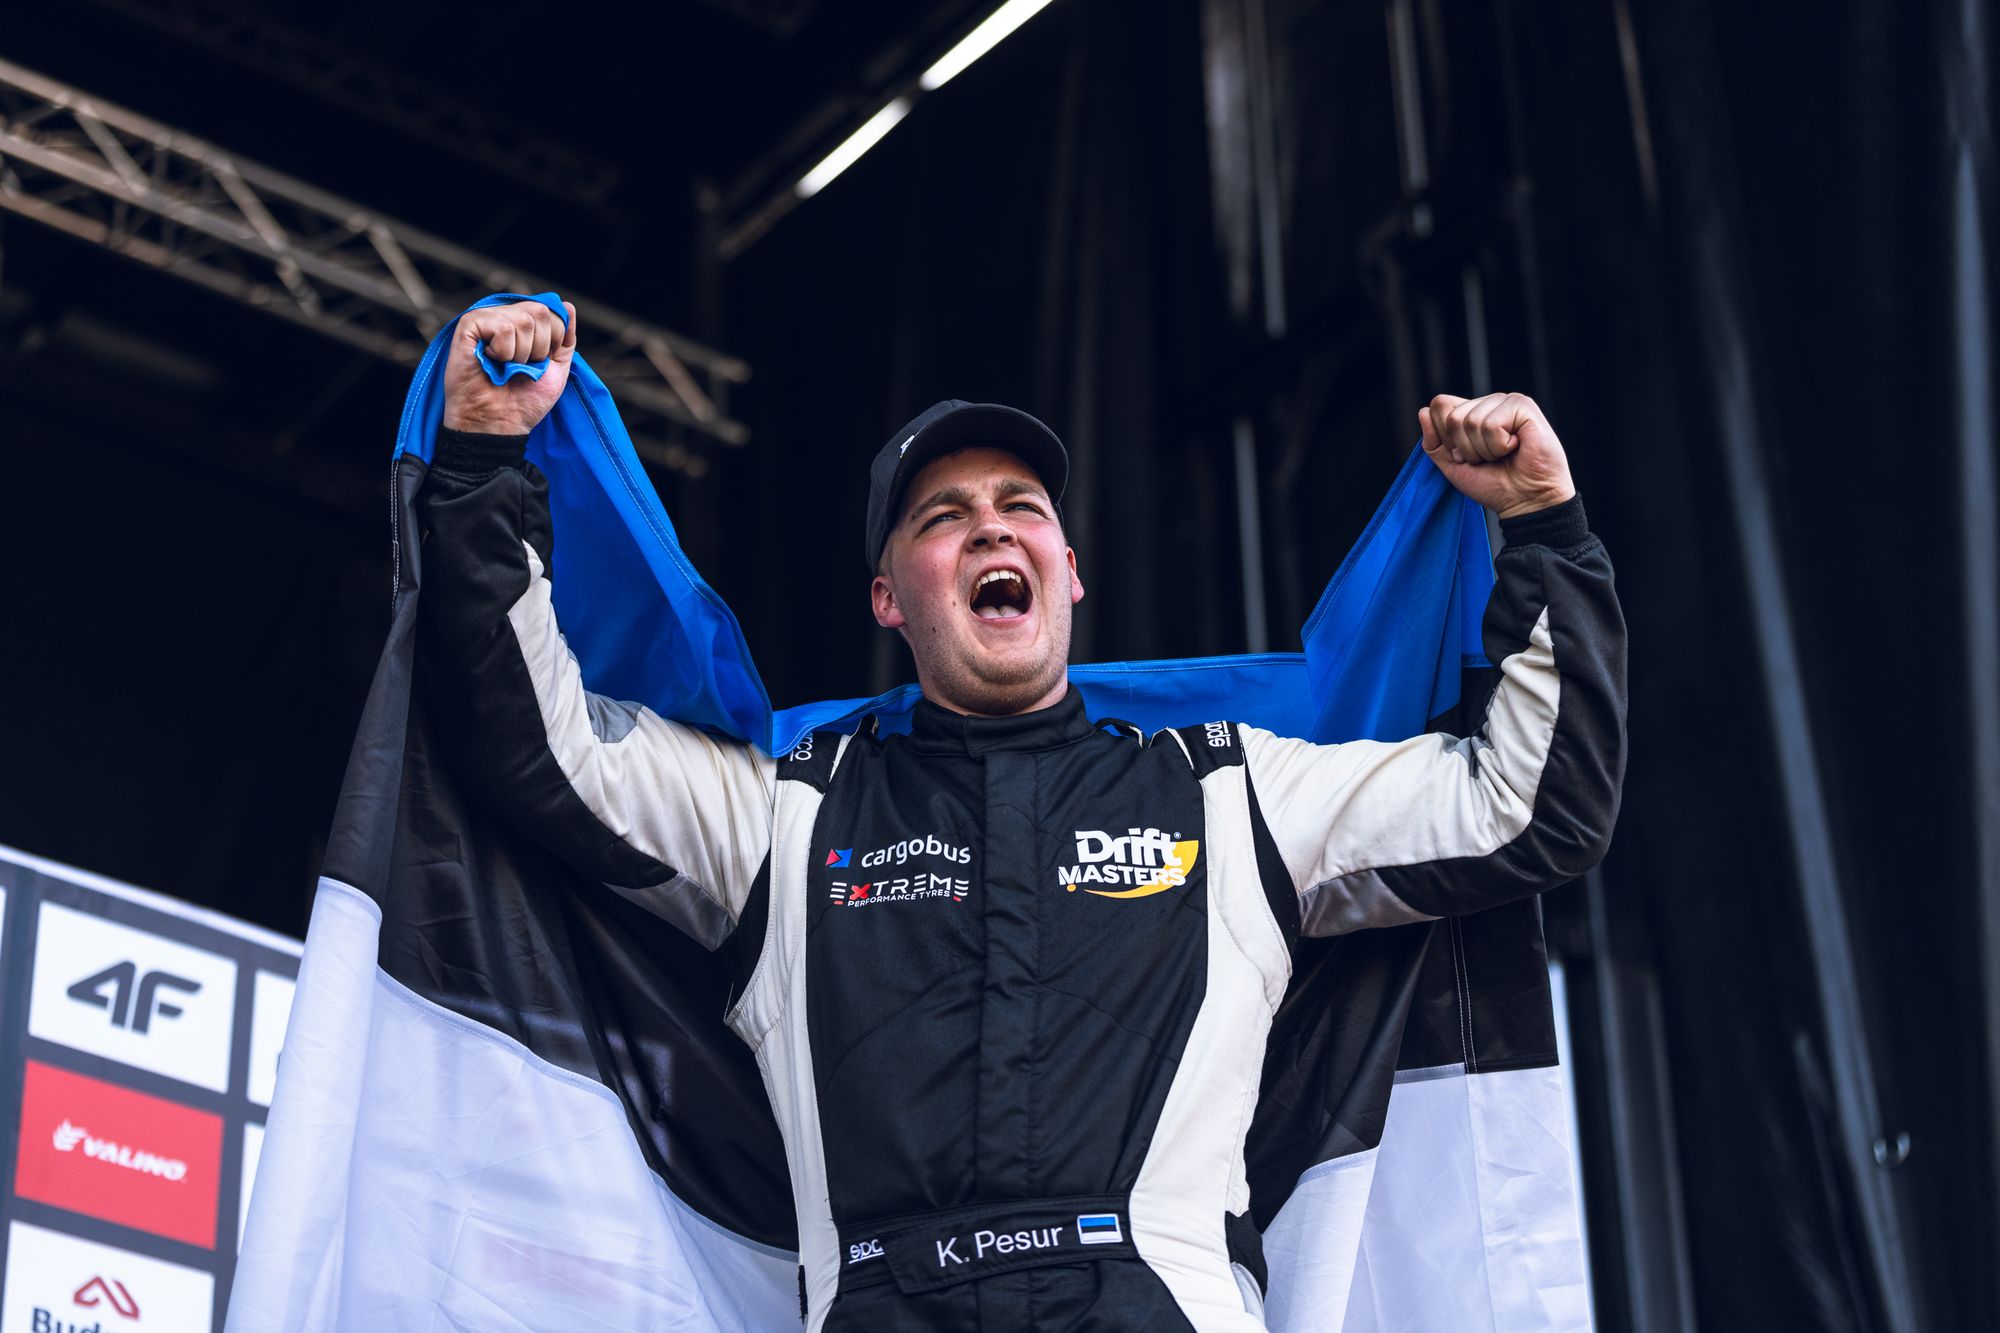 Esimese eestlasena Drift Mastersi etapi võitnud Kevin Pesur:  unistus on täitunud